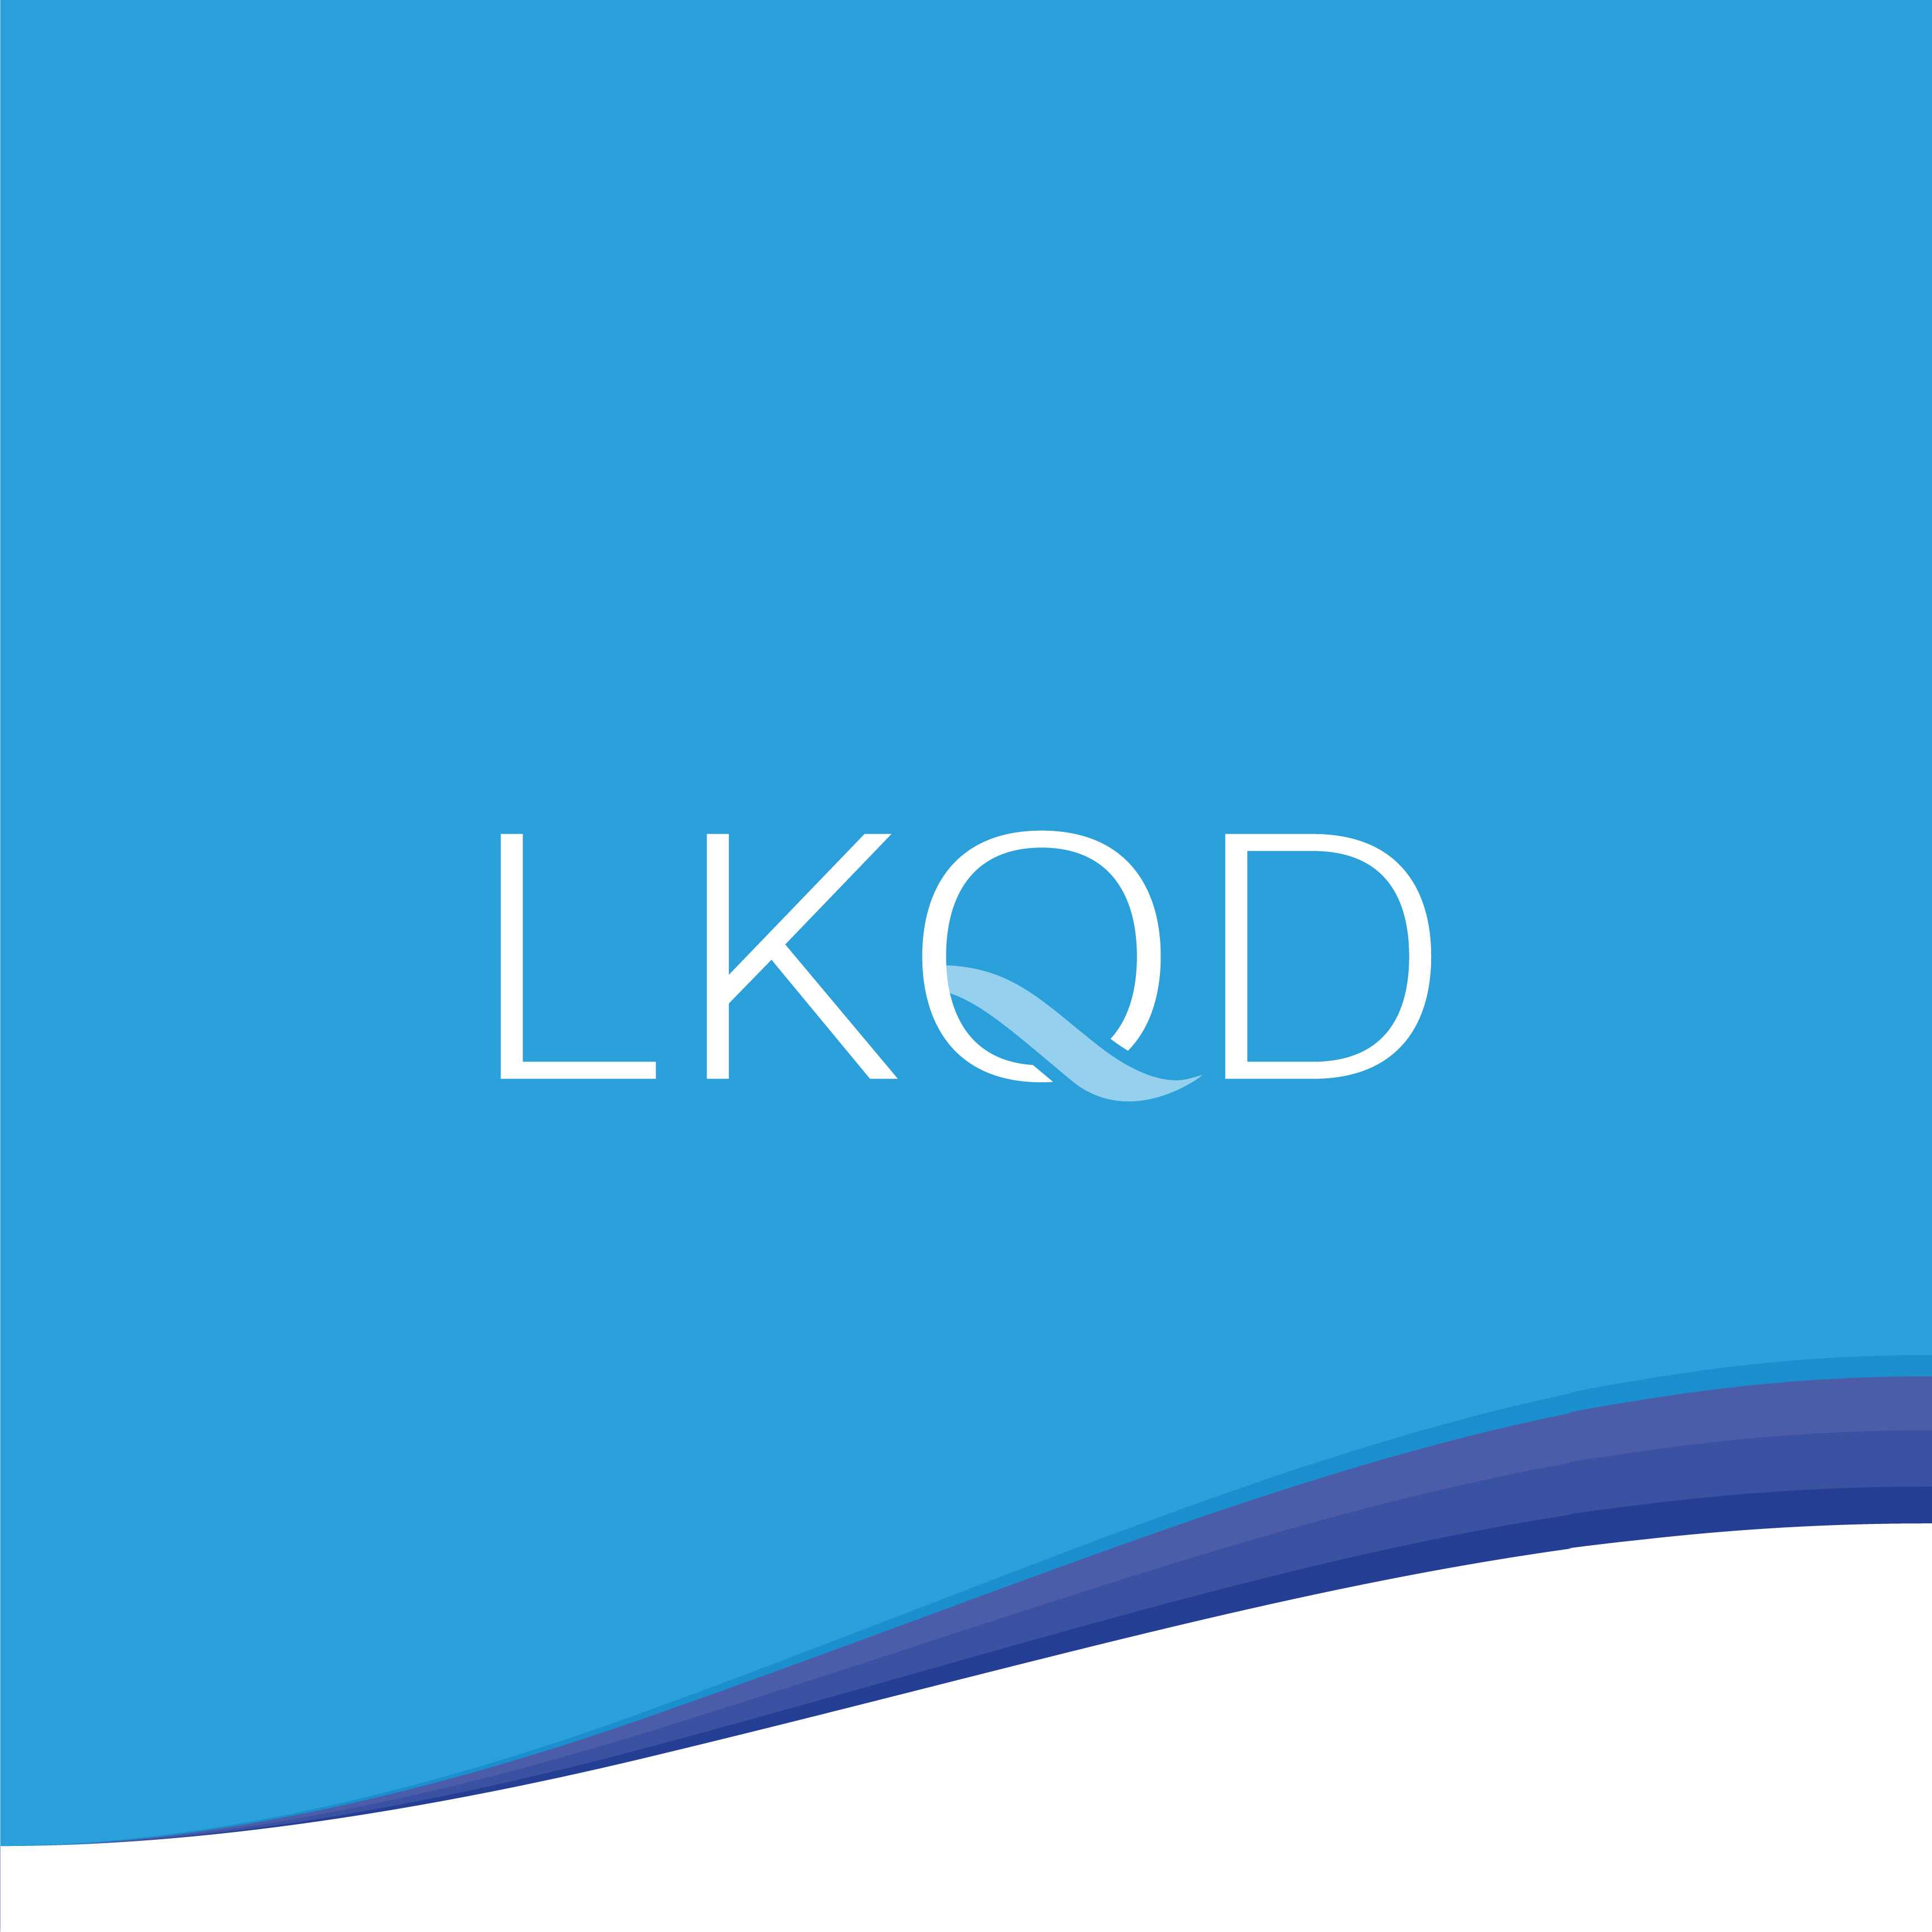 LKQD Brand Refresh